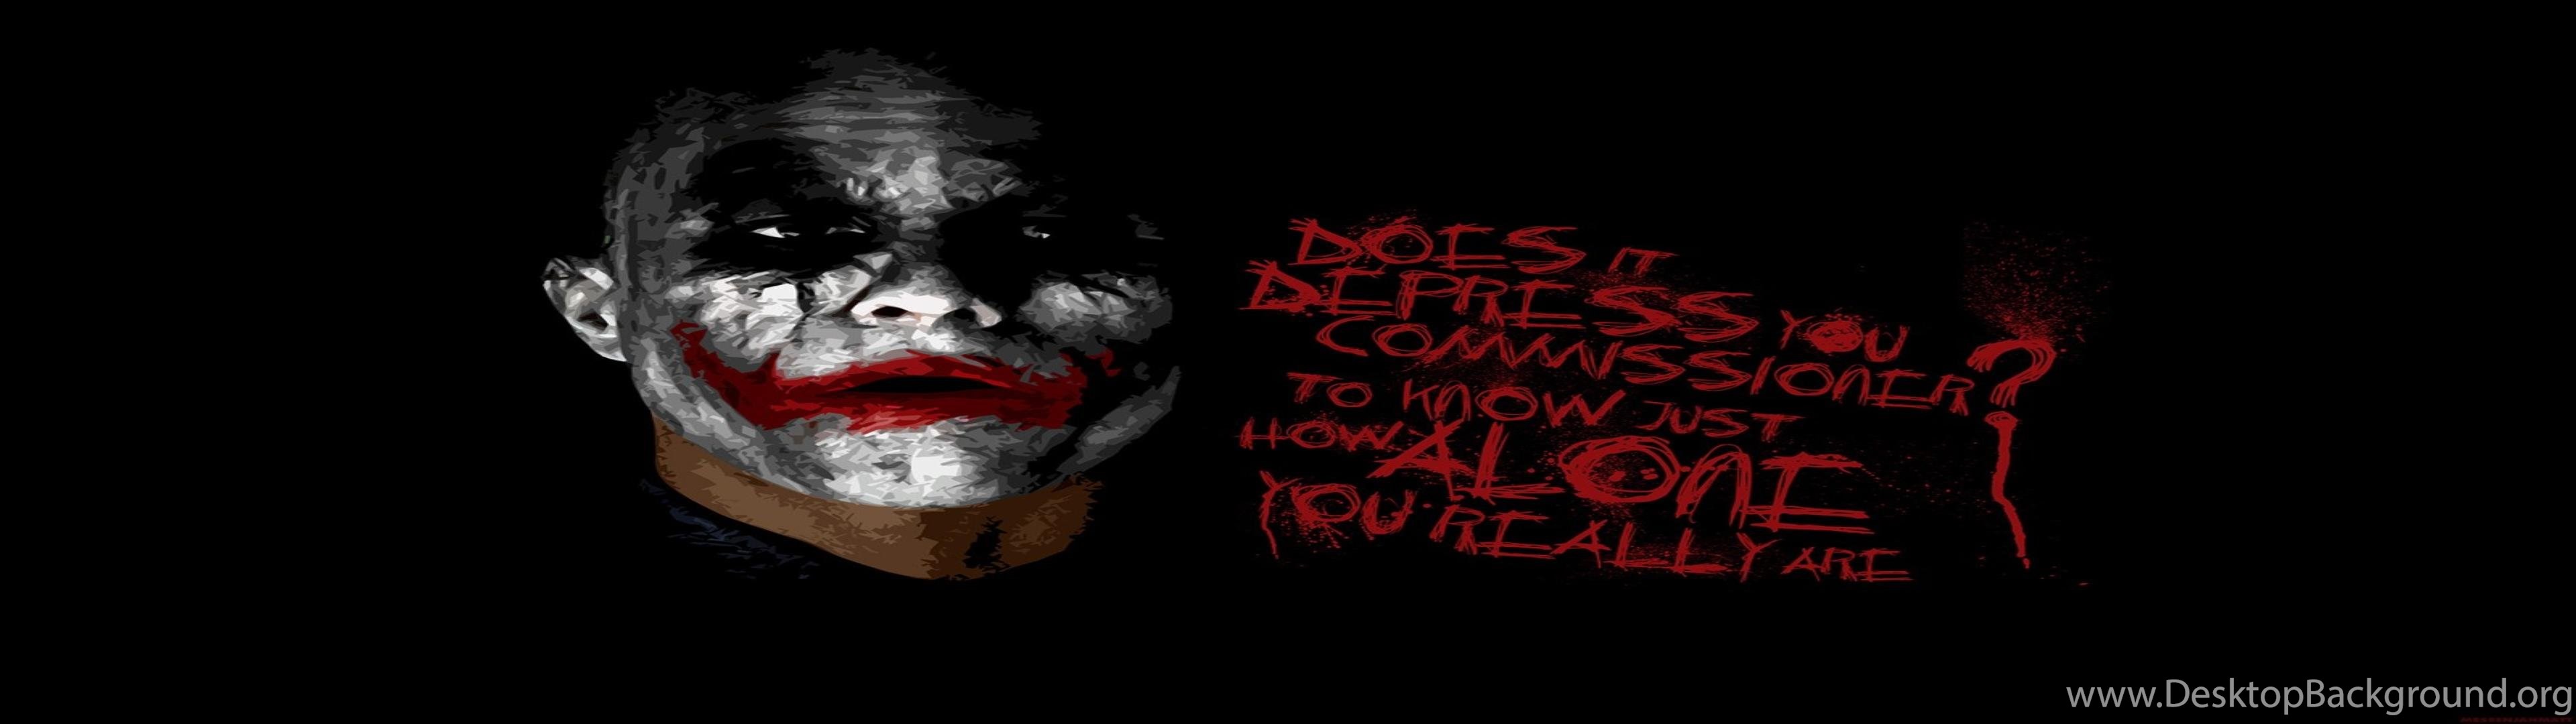 Download Joker Hd Wallpapers In 3840x1080 Widescreen Mobile Desktop Background